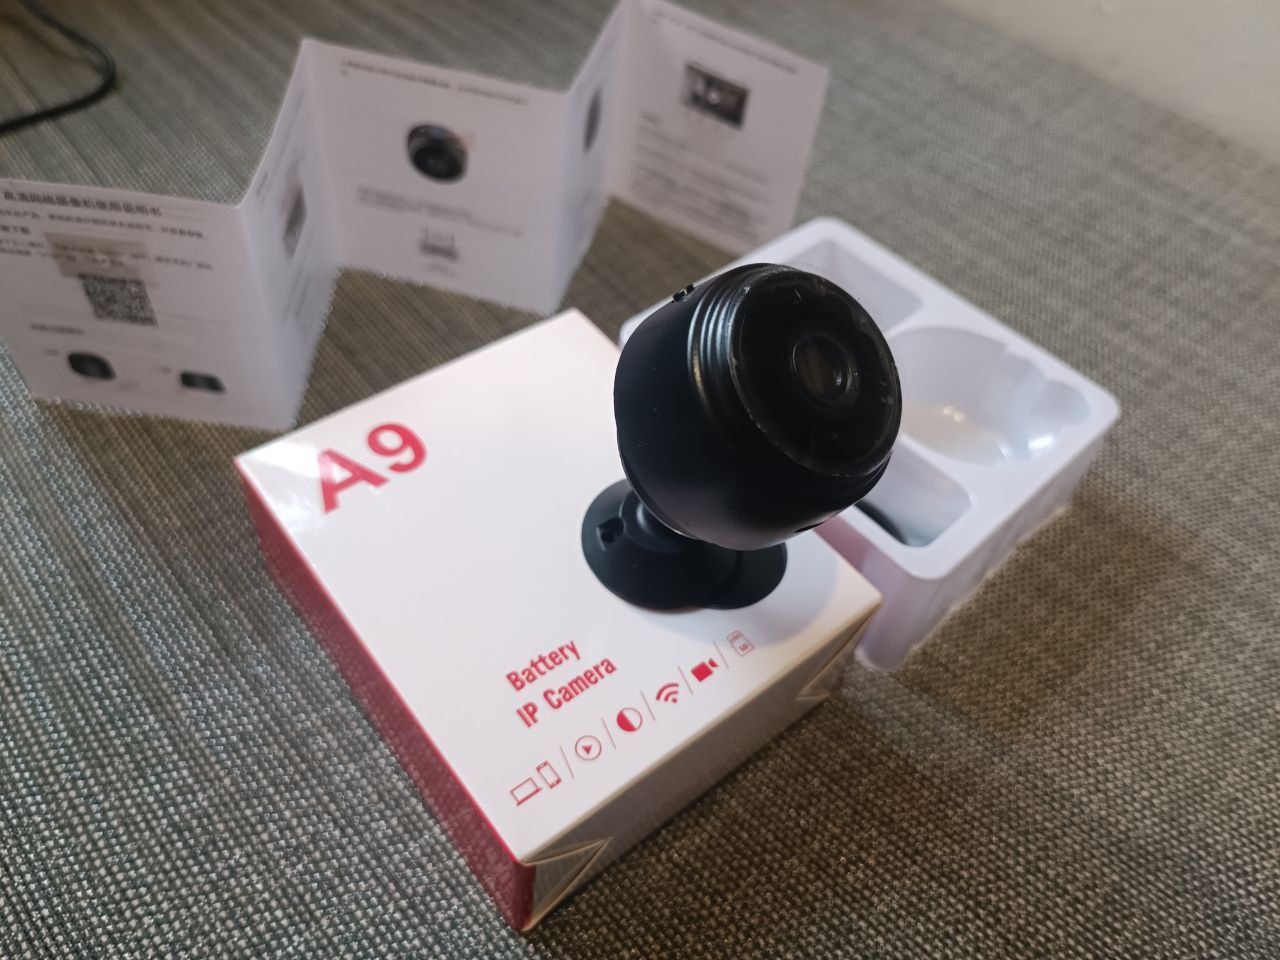 Мини камера для видеонаблюдения Wi-Fi A9 FullHD